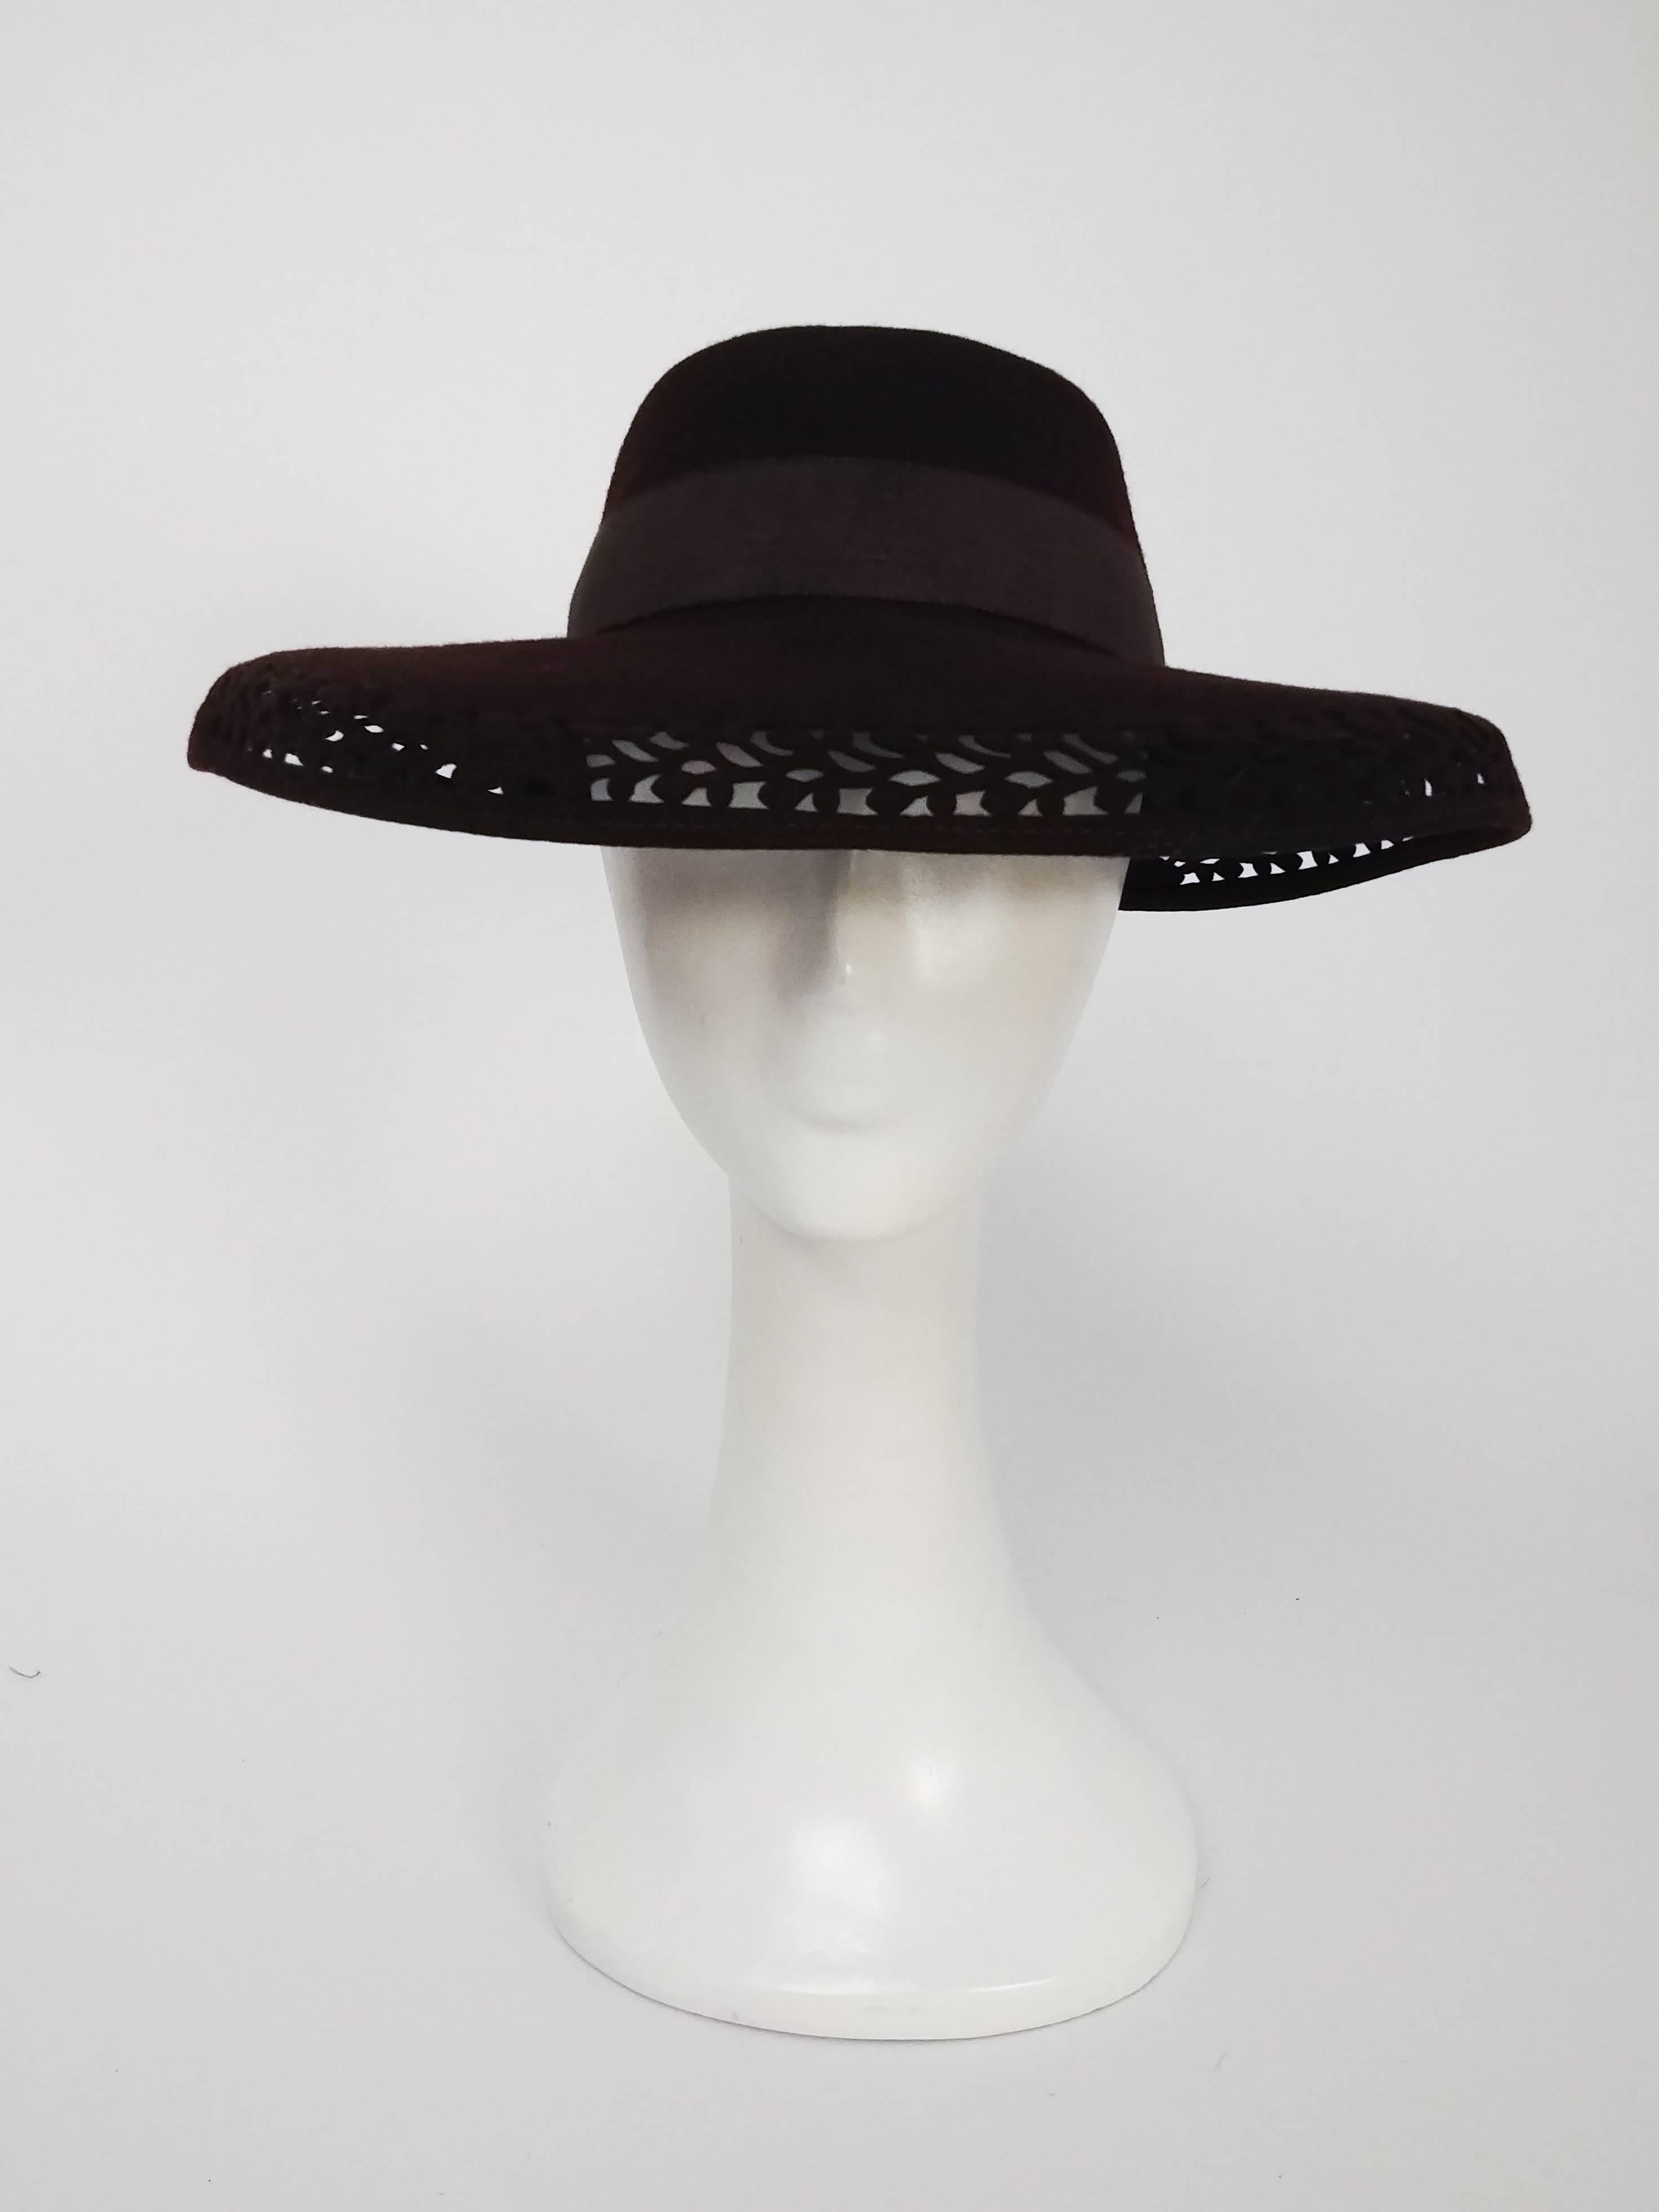 1940s Brown Felt Wide Brimmed Hat. Cut-work design along brim of hat, embellished with ribbon bow at back. 